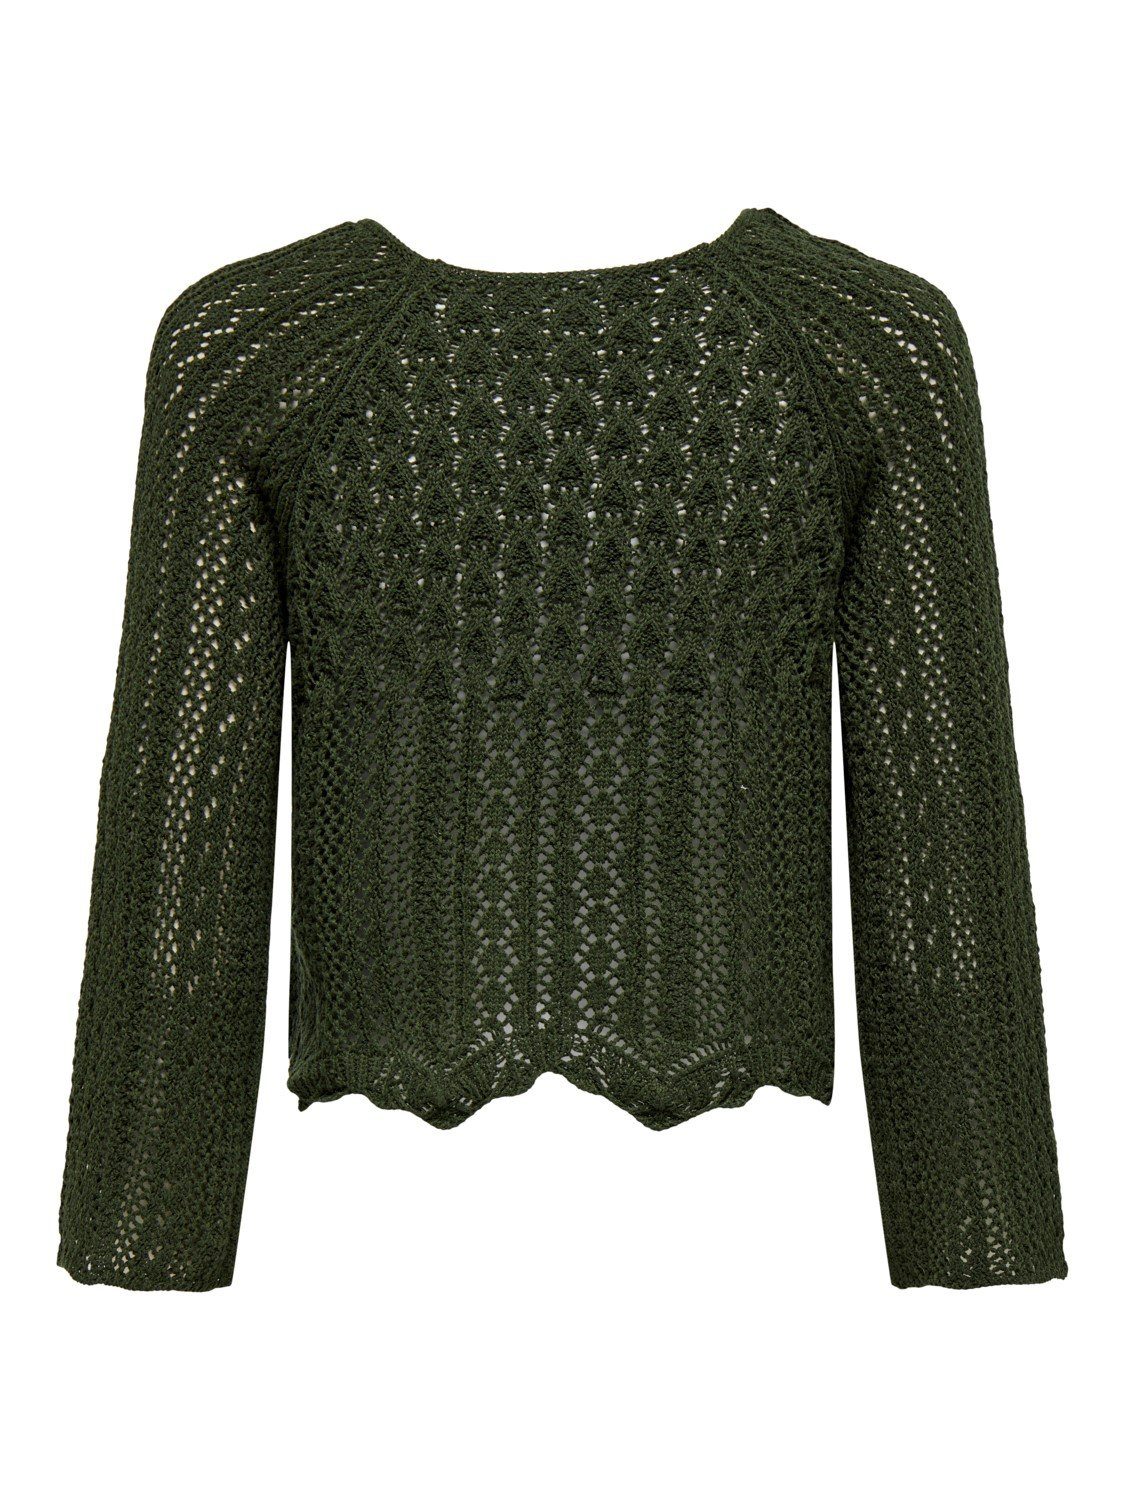 Grün Damen OnlNola ONLY Strick-Pullover Arm 3/4 Sweater Strickpullover Only Grobstrick Crop